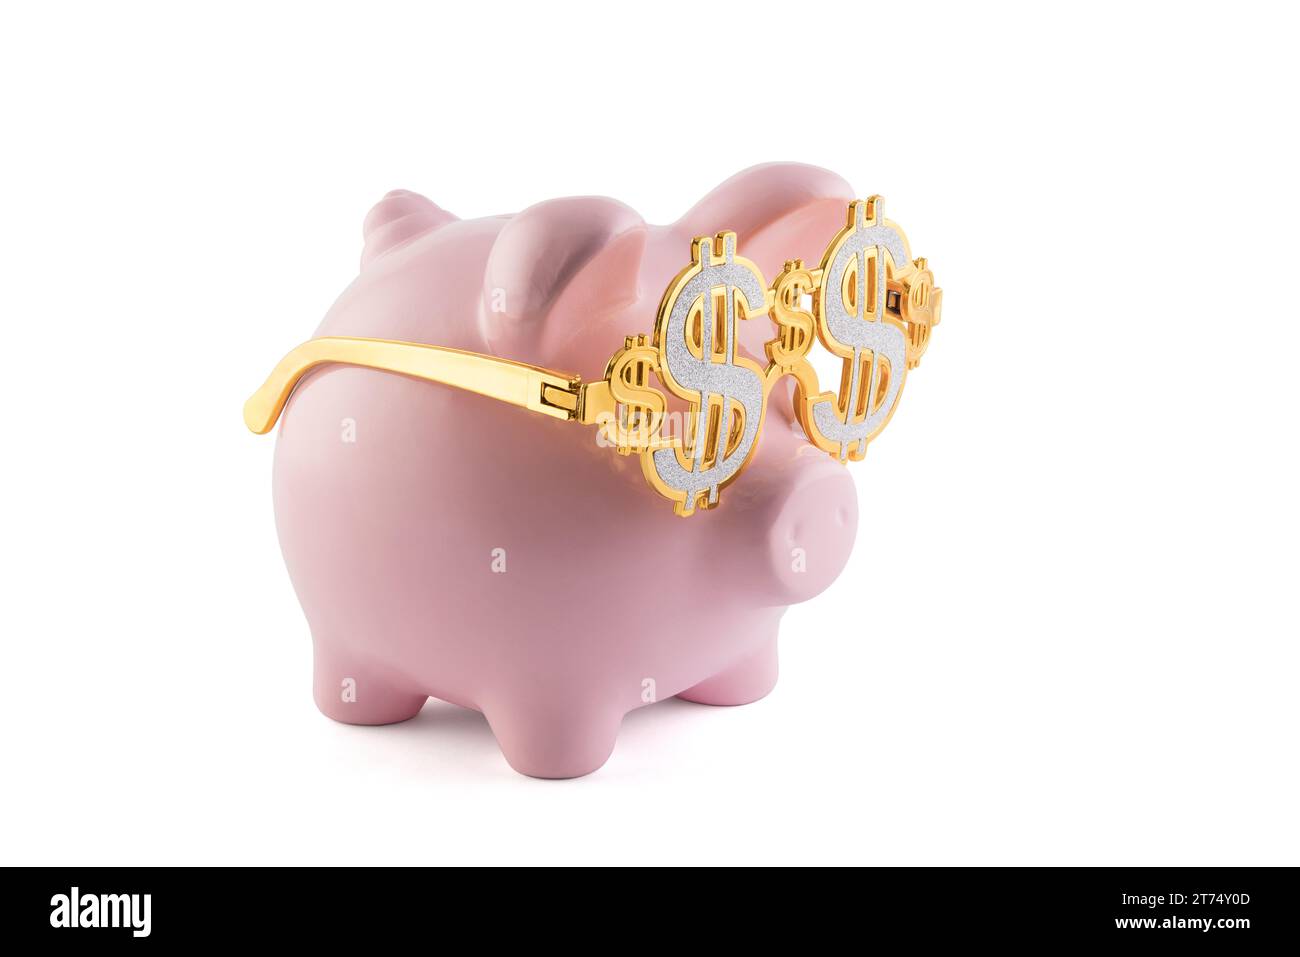 Salvadanaio rosa con occhiali dorati con simbolo del dollaro isolato su sfondo bianco con percorso di ritaglio Foto Stock